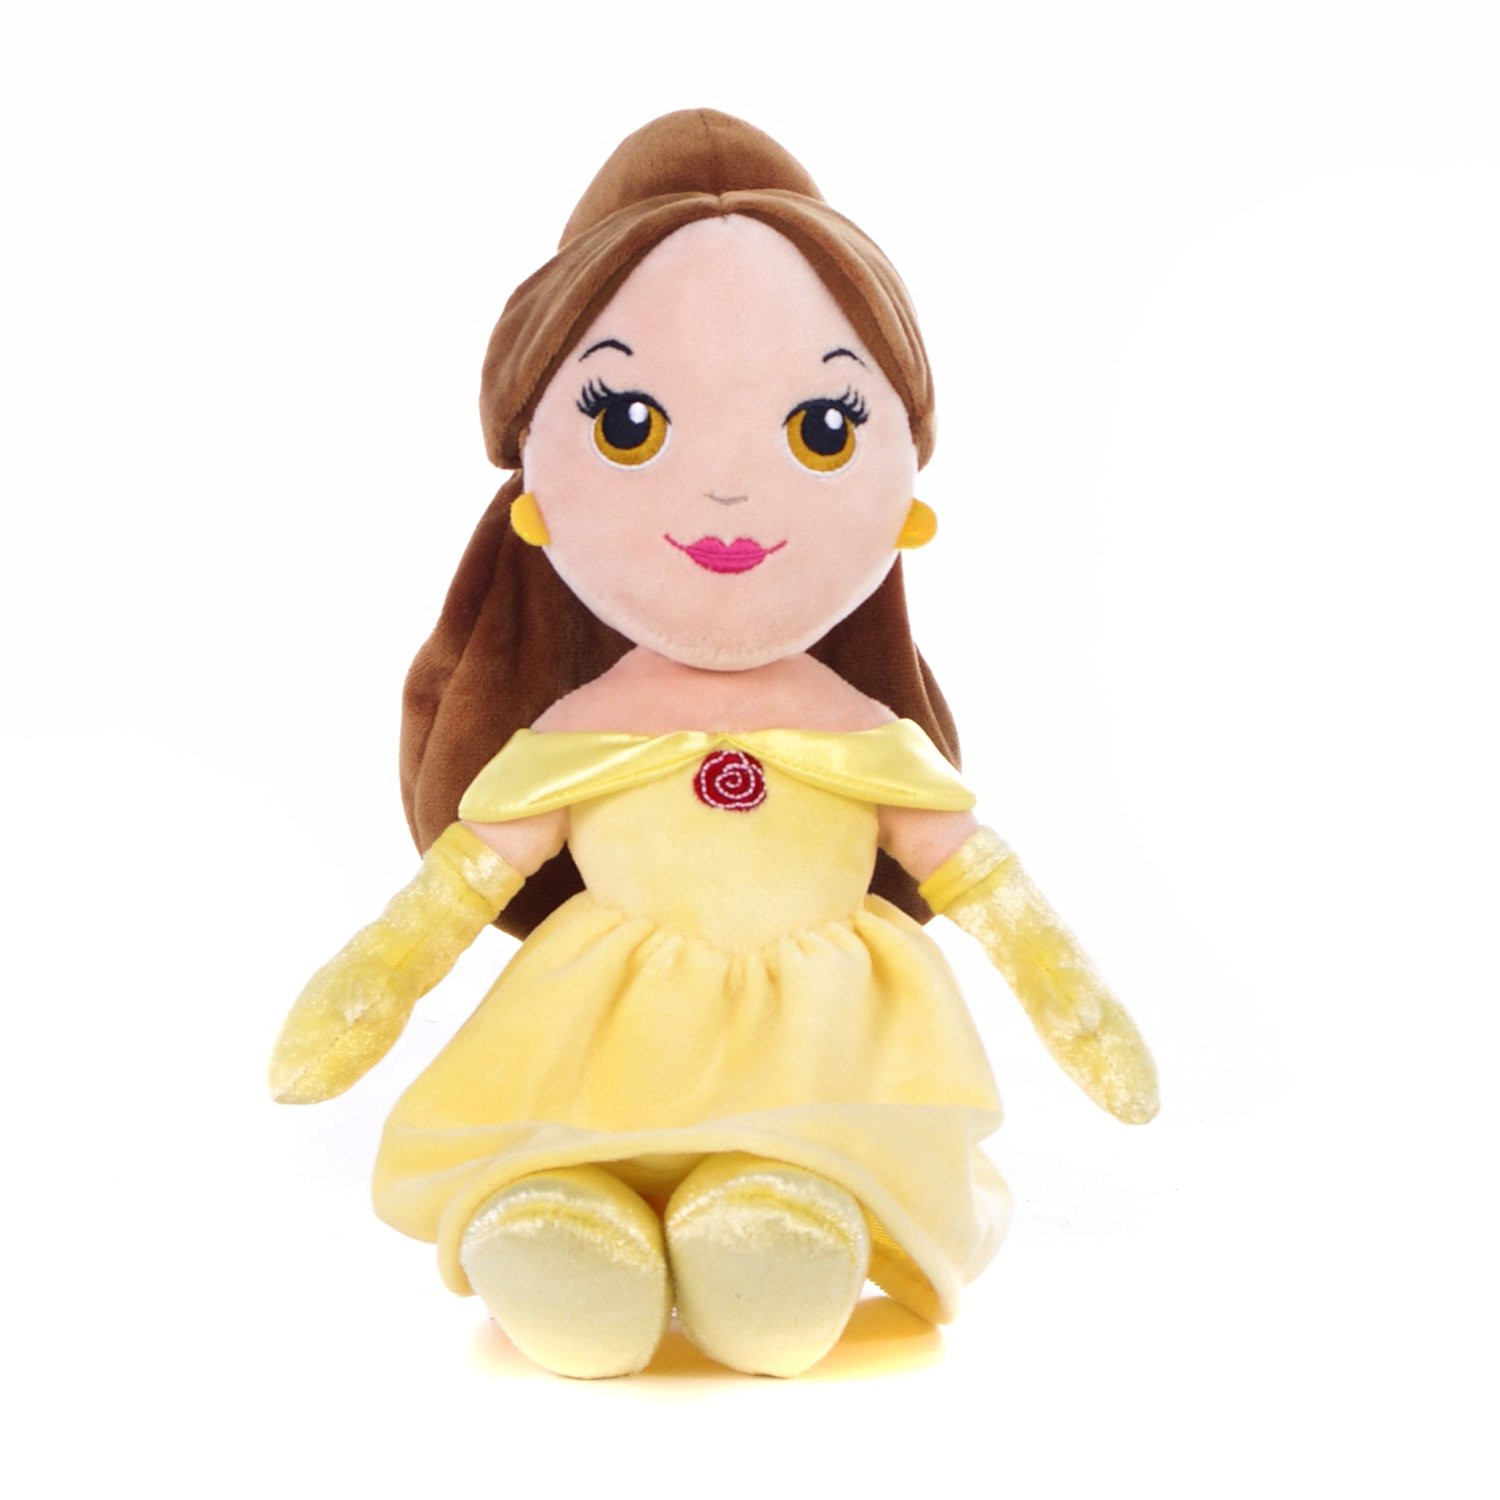 Peluche Principessa Belle 22 cm peluches Disney *03013 pelusciamo